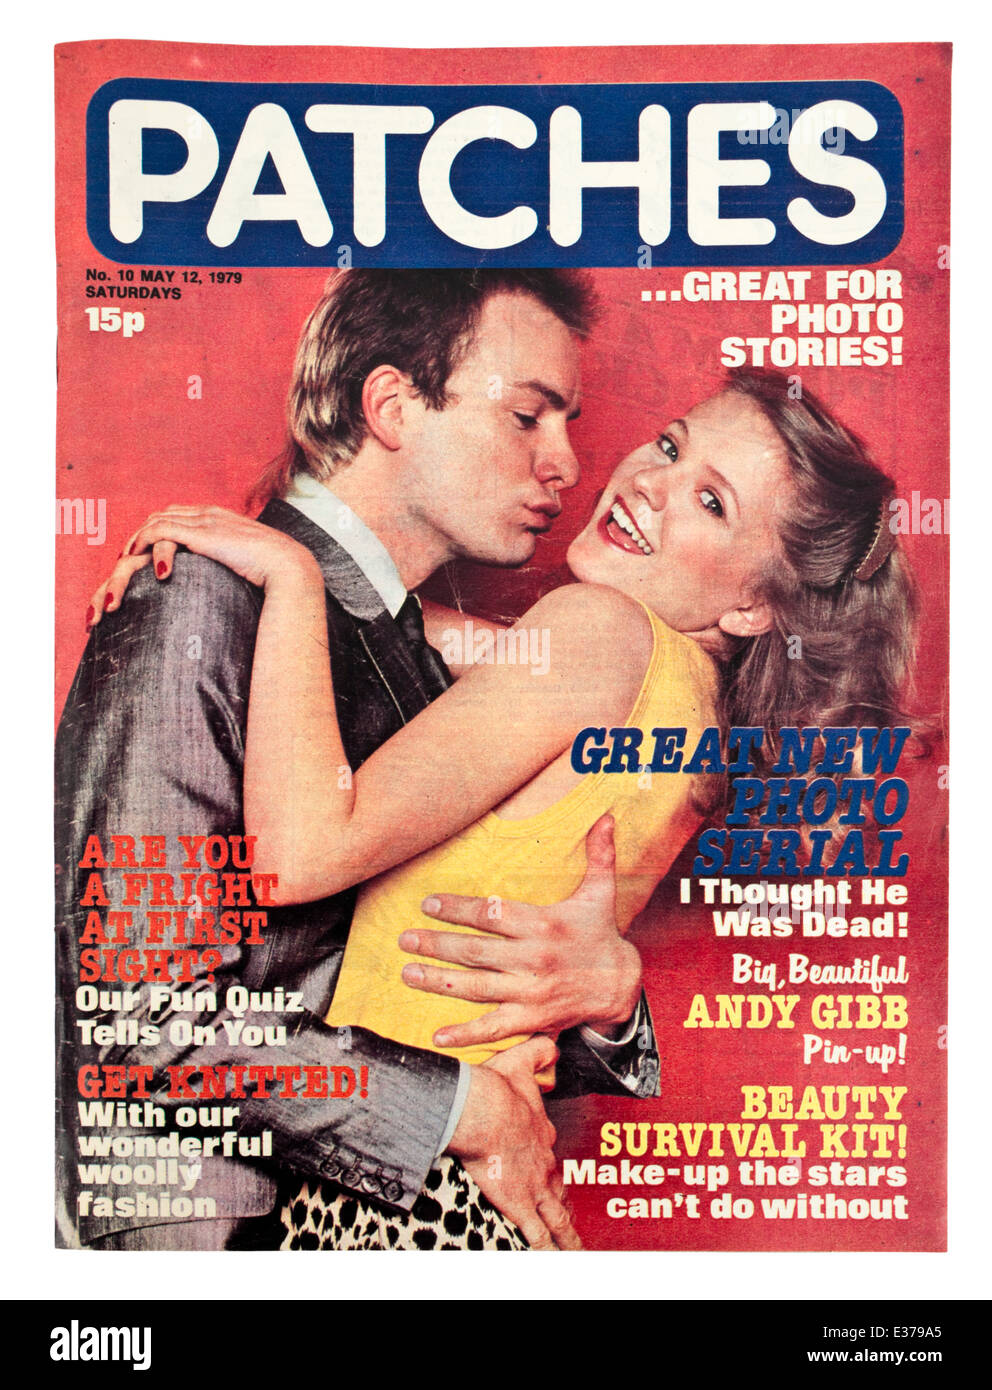 Vintage copia di "patch", un famoso British teen magazine dalla fine degli anni settanta. Questo è il problema n. 10 dal 12 maggio 1979. Foto Stock